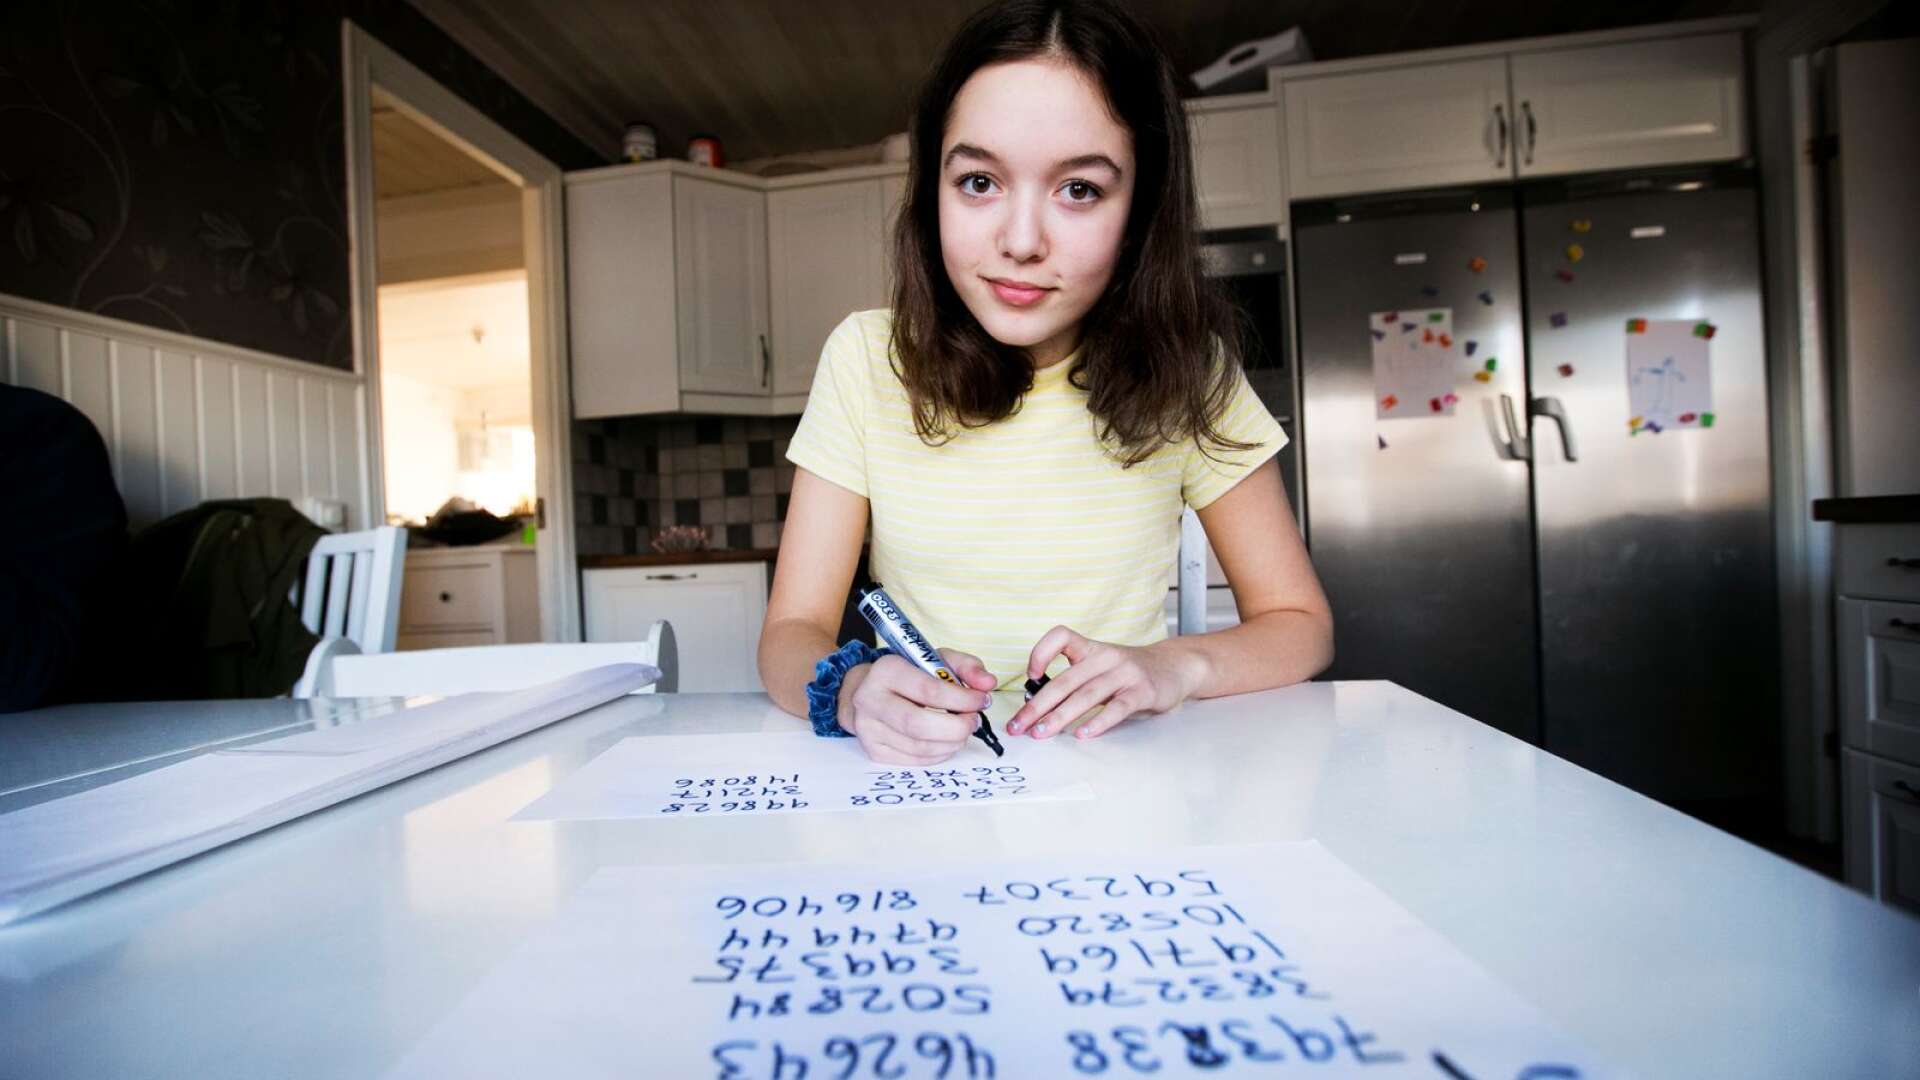 Amilia Al-Rufeye, 15, vann skolans pi-tävling. Hon klarade imponerande 610 decimaler.